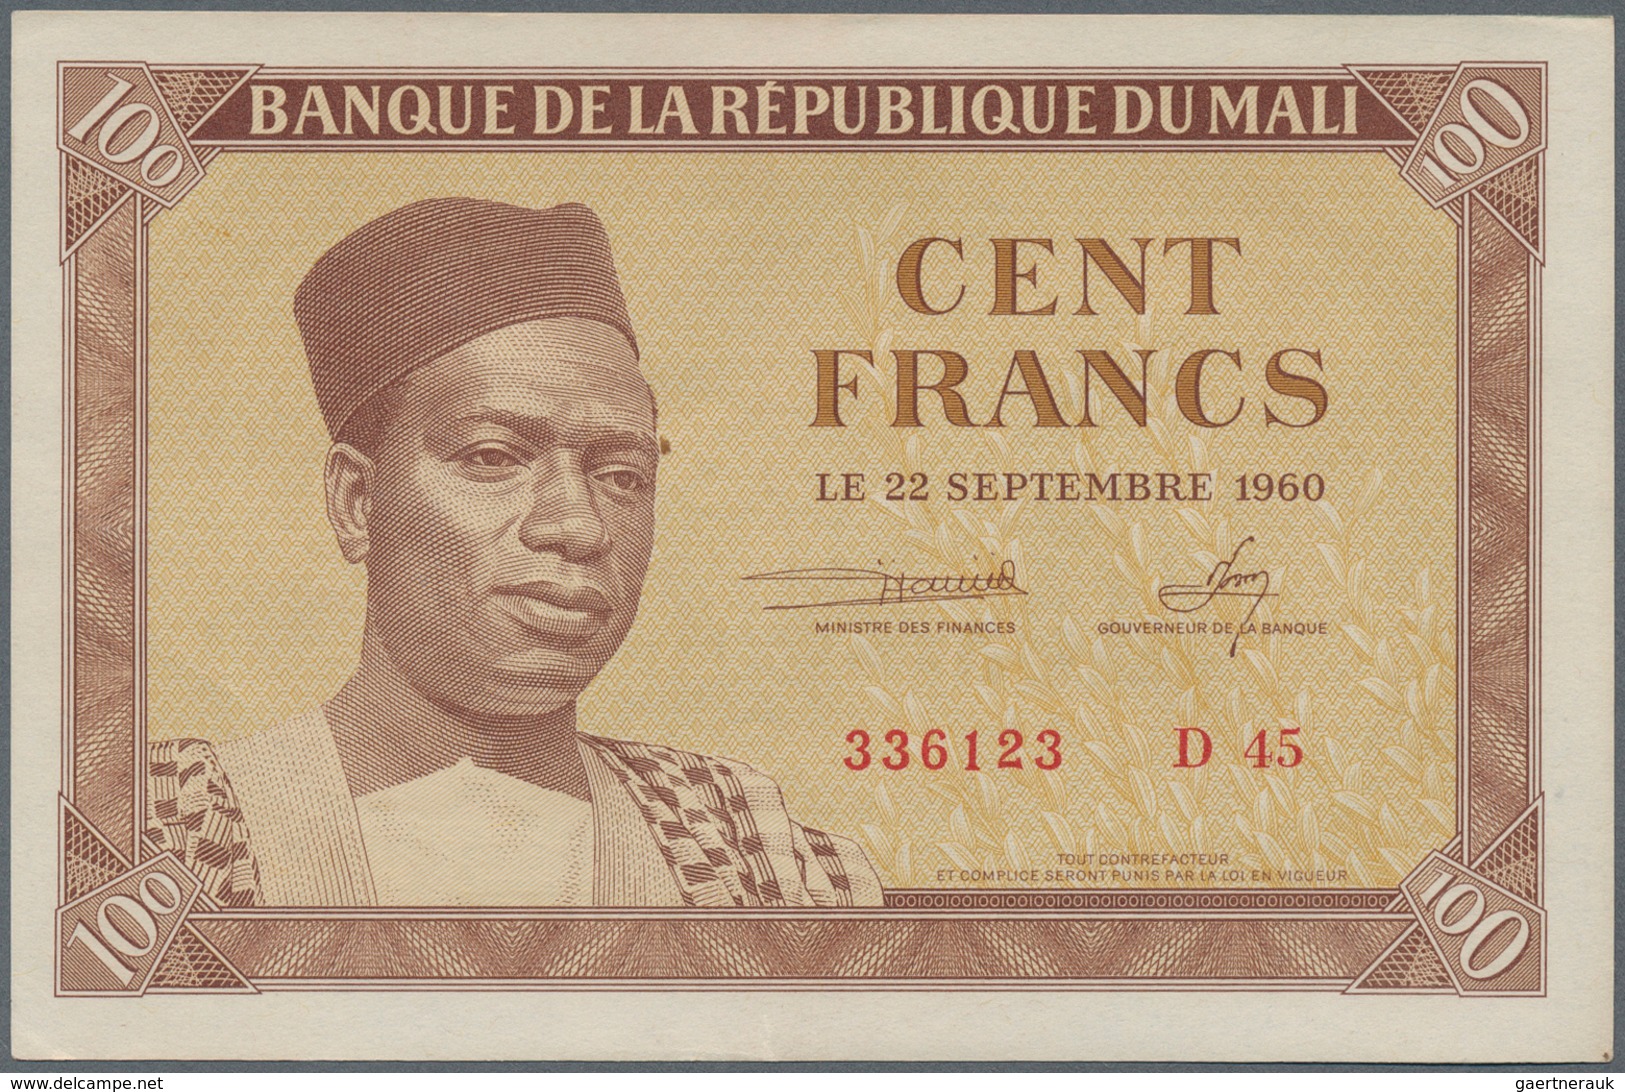 02003 Mali: 100 Francs 1960 P. 2 In Condition: AUNC. - Mali